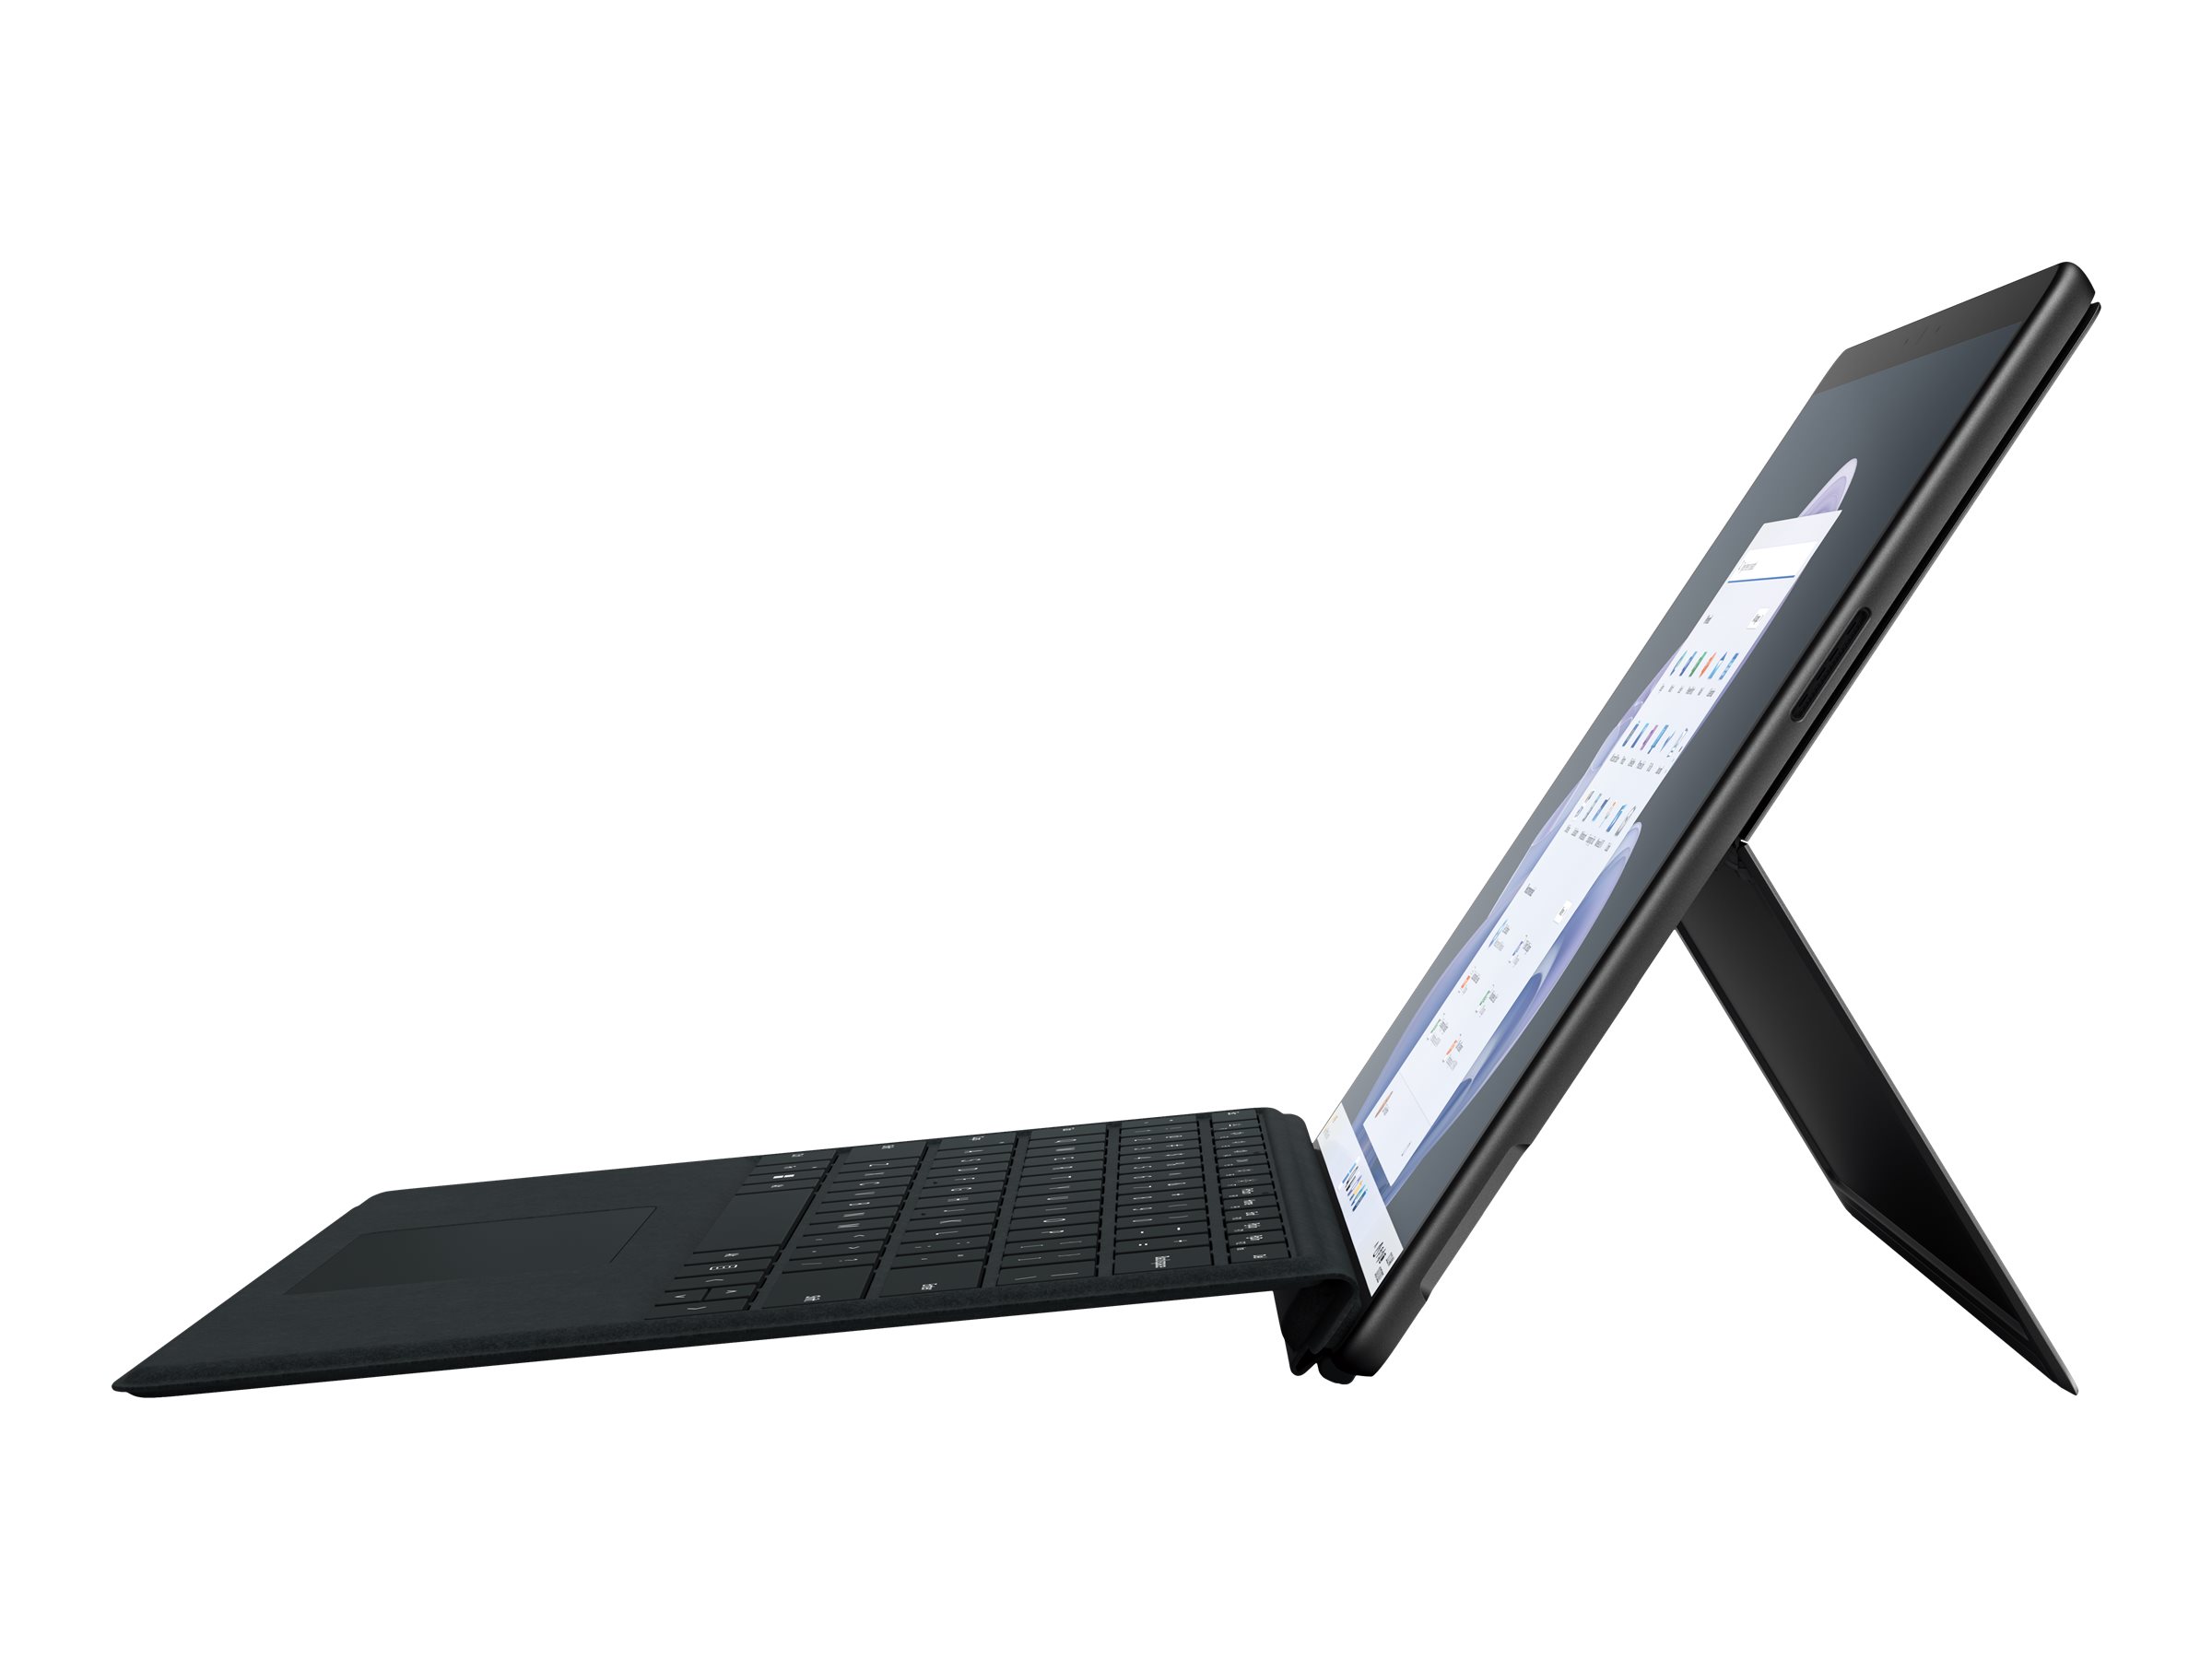 Microsoft Surface Pro 9 for Business - Tablette - Intel Core i7 - 1265U / jusqu'à 4.8 GHz - Evo - Win 10 Pro - Carte graphique Intel Iris Xe - 16 Go RAM - 512 Go SSD - 13" écran tactile 2880 x 1920 @ 120 Hz - Wi-Fi 6E - graphite - S8N-00021 - Ordinateurs portables